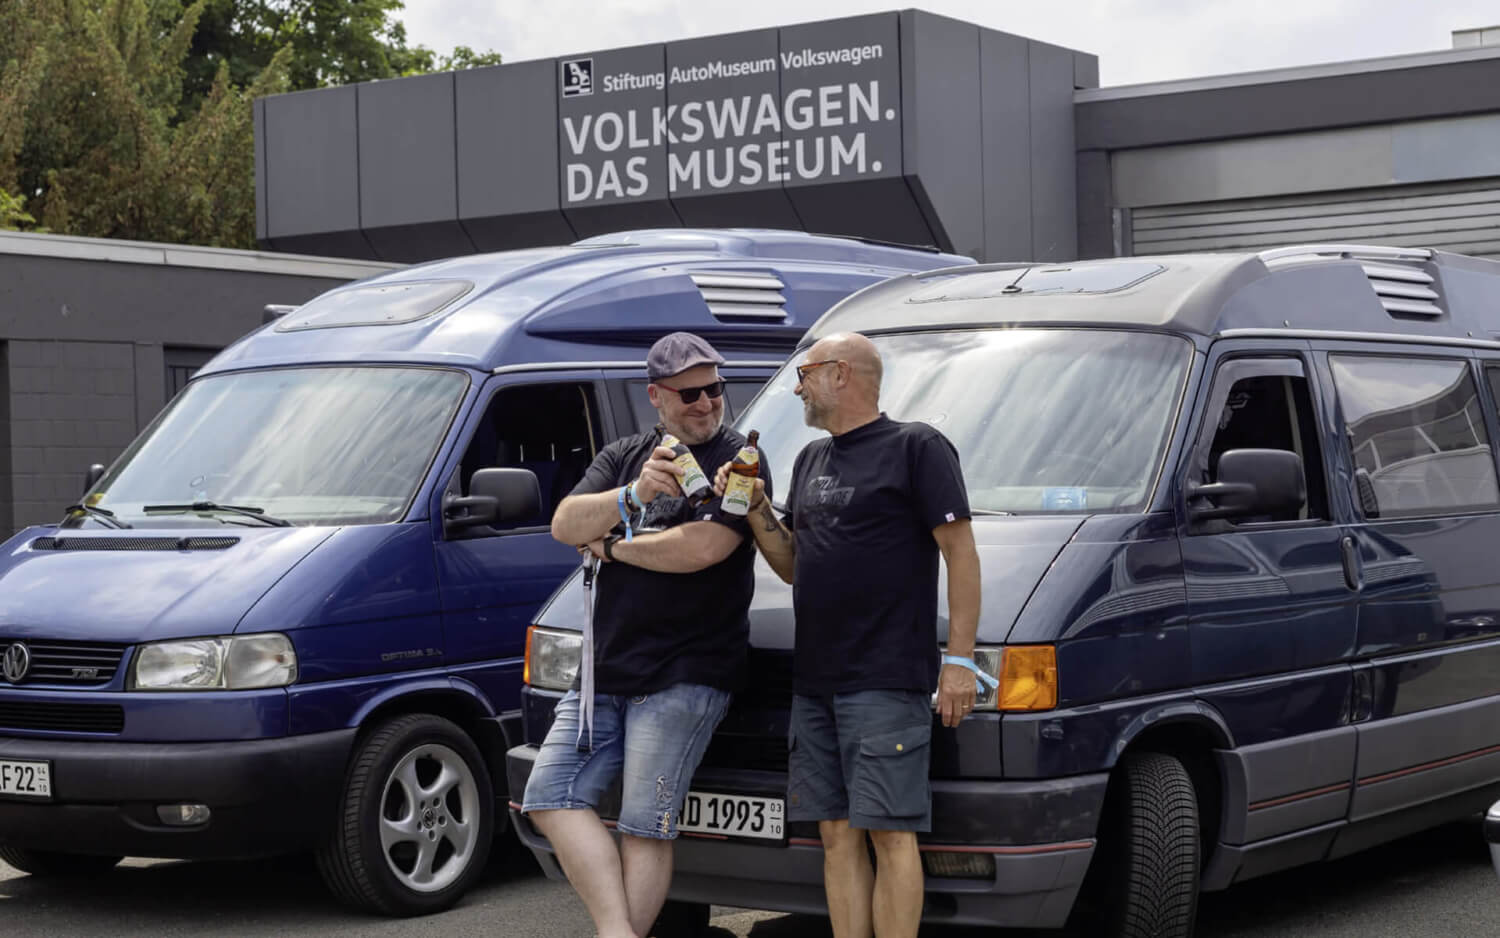 Dehlerfreunde on Tour - Vereinsbrauerei Apolda | Domi on Tour - Stiftung Automuseum